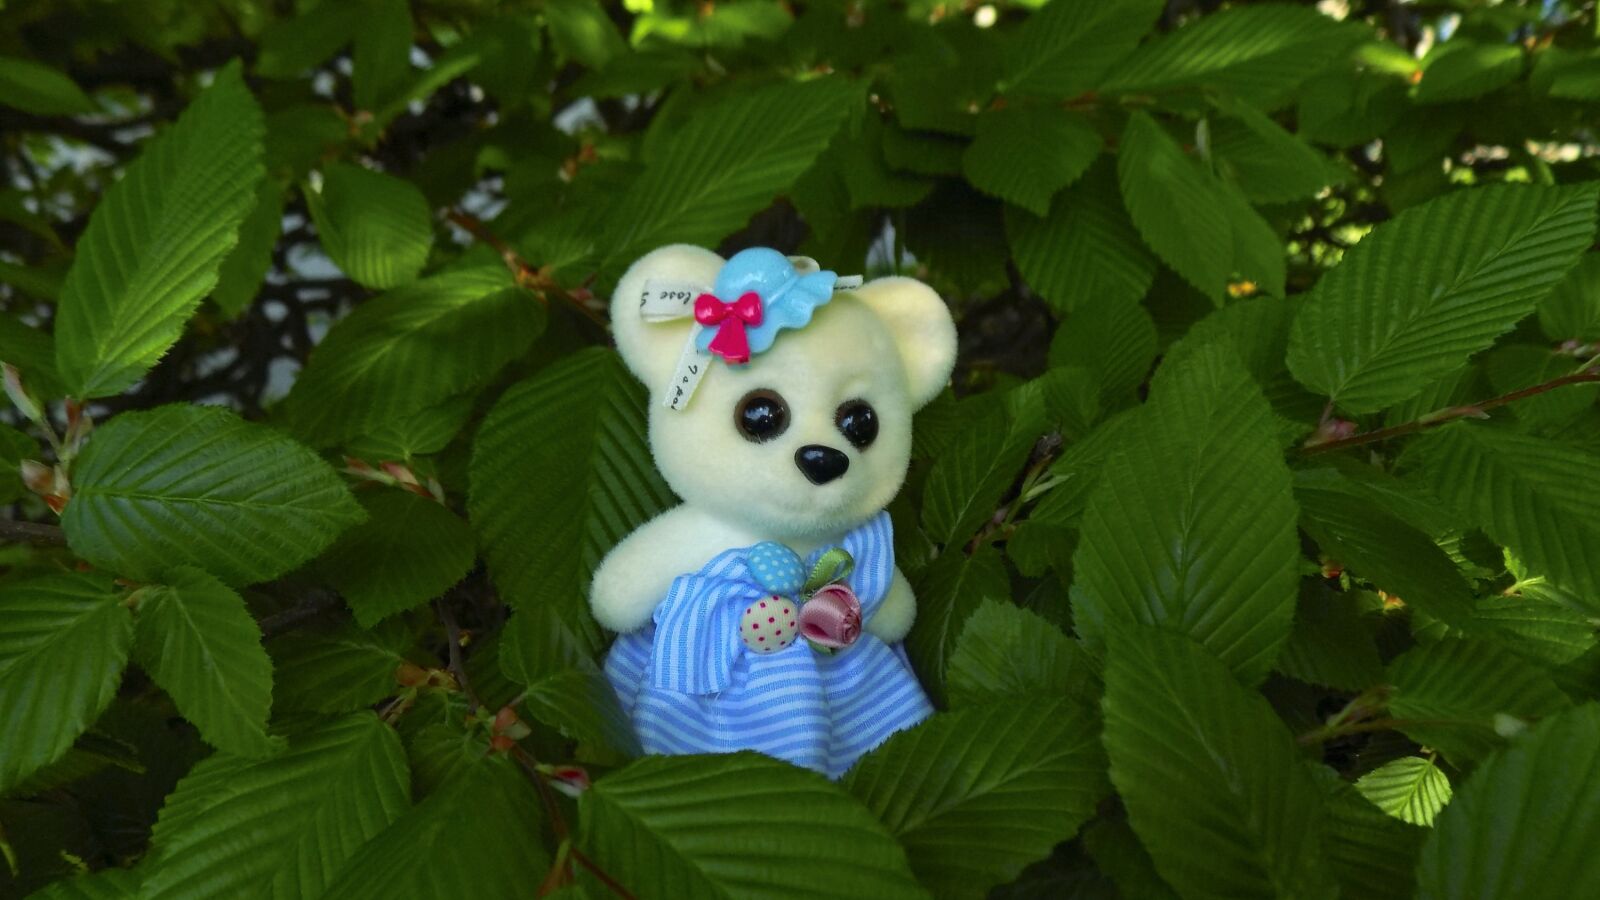 Nikon COOLPIX L330 sample photo. Bear, teddy-bear, toy photography